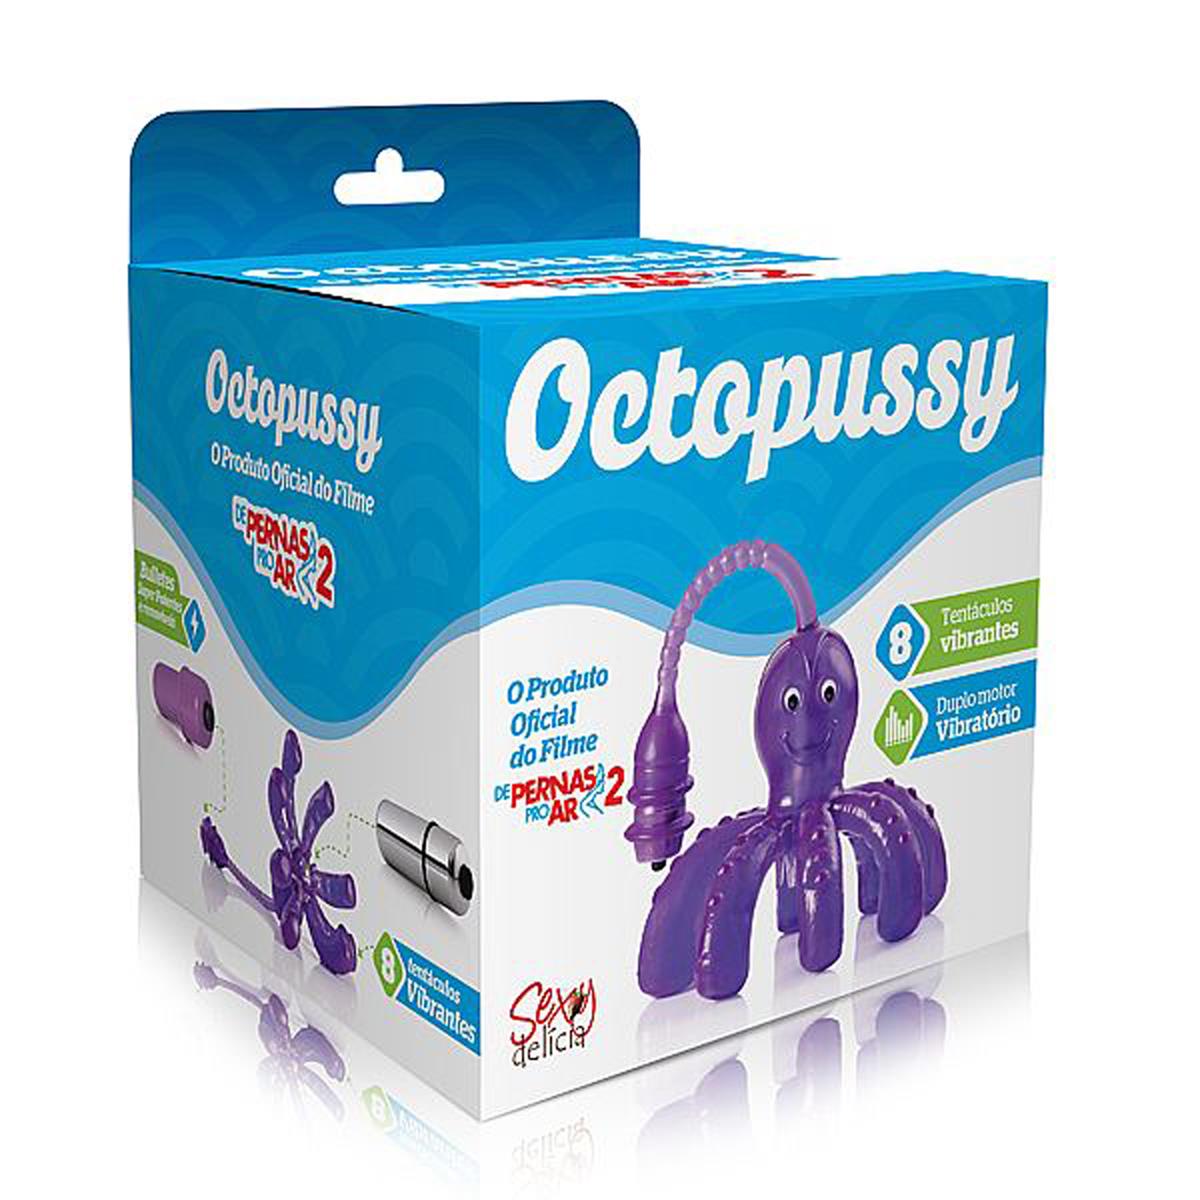 Octopussy - O produto oficial do Filme de Pernas pro ar 2 - Miess